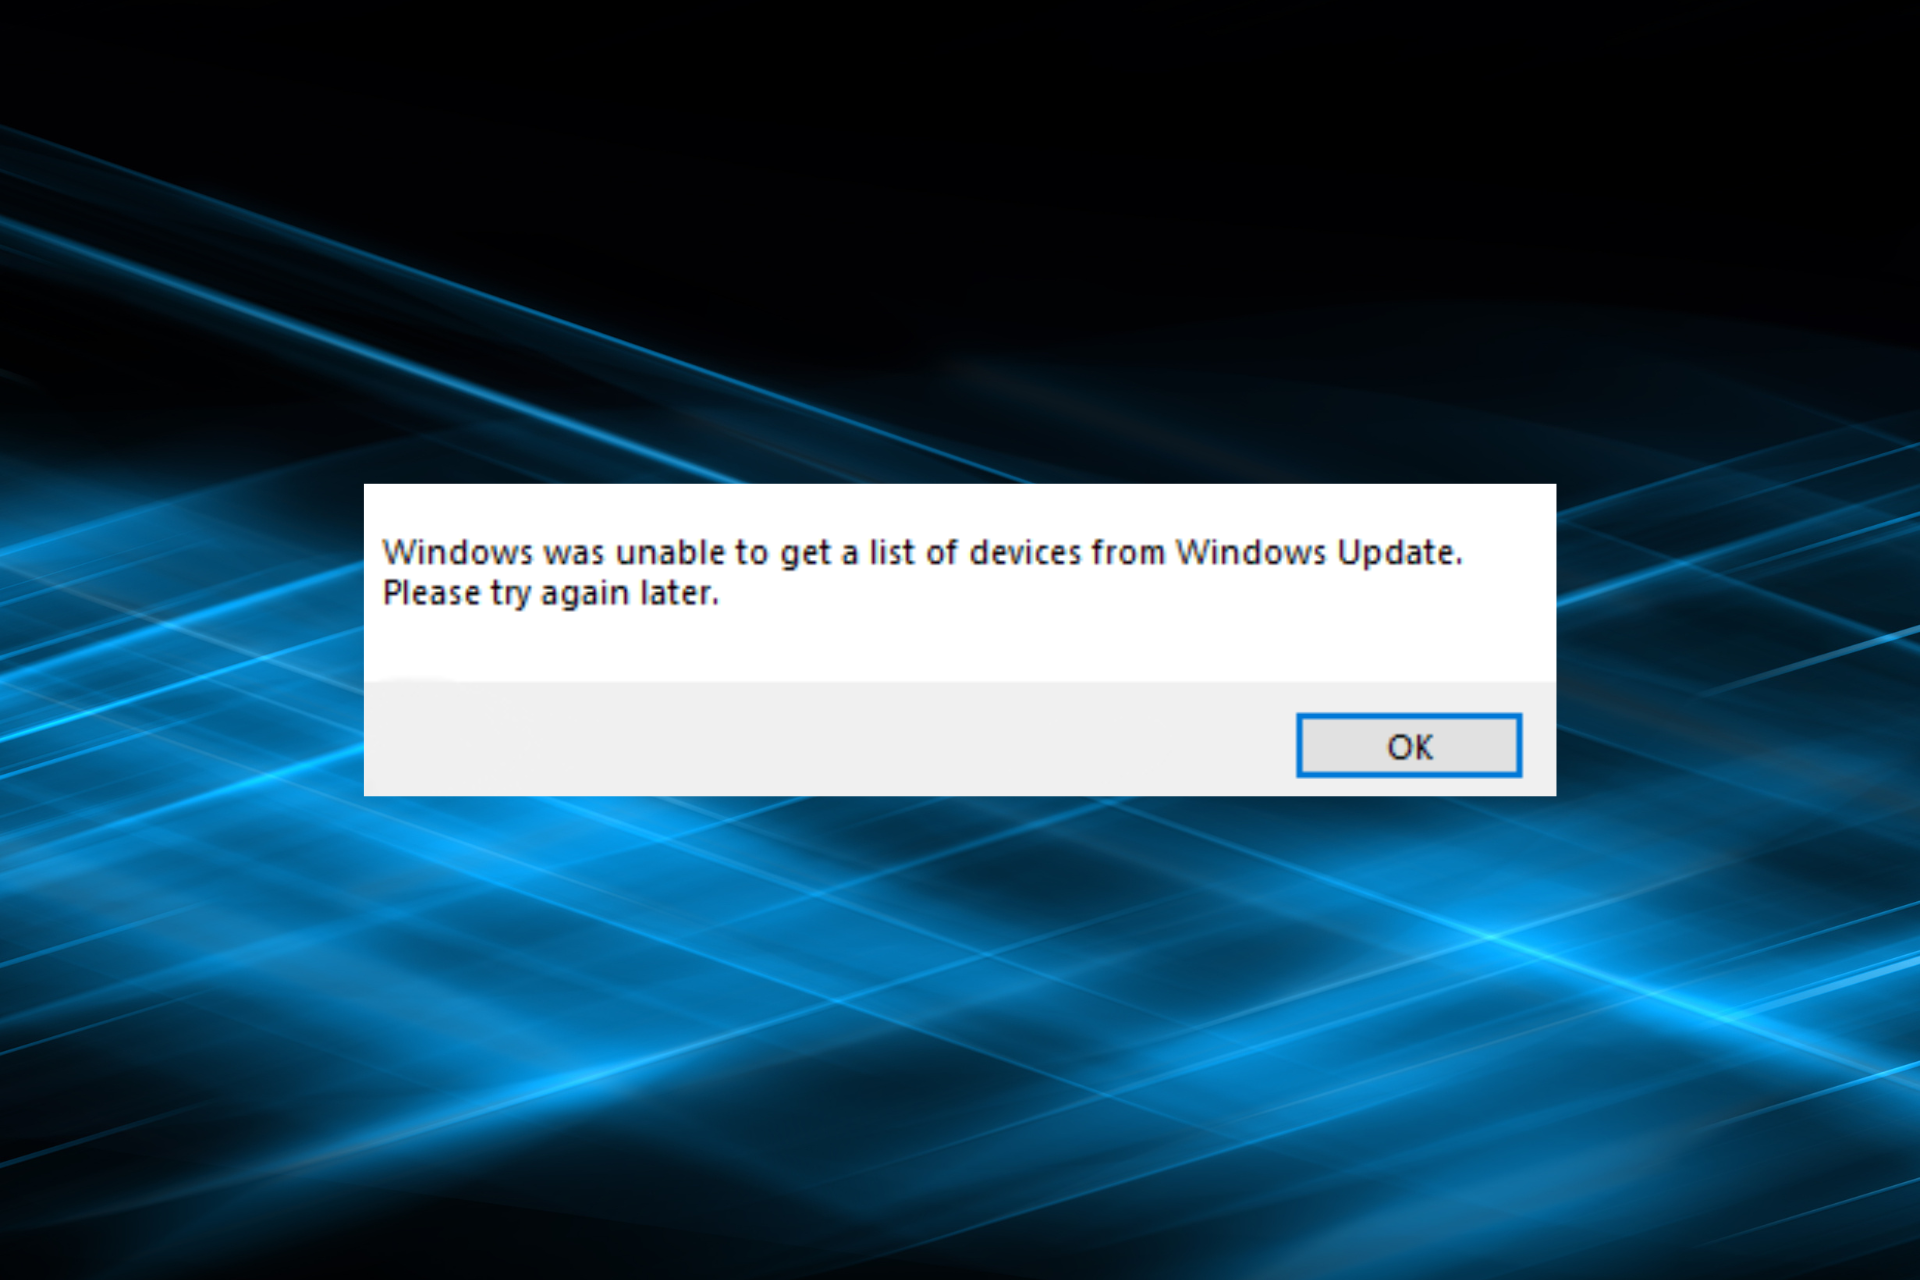 reparar Windows no pudo obtener una lista de dispositivos del error de actualización de Windows al instalar la impresora